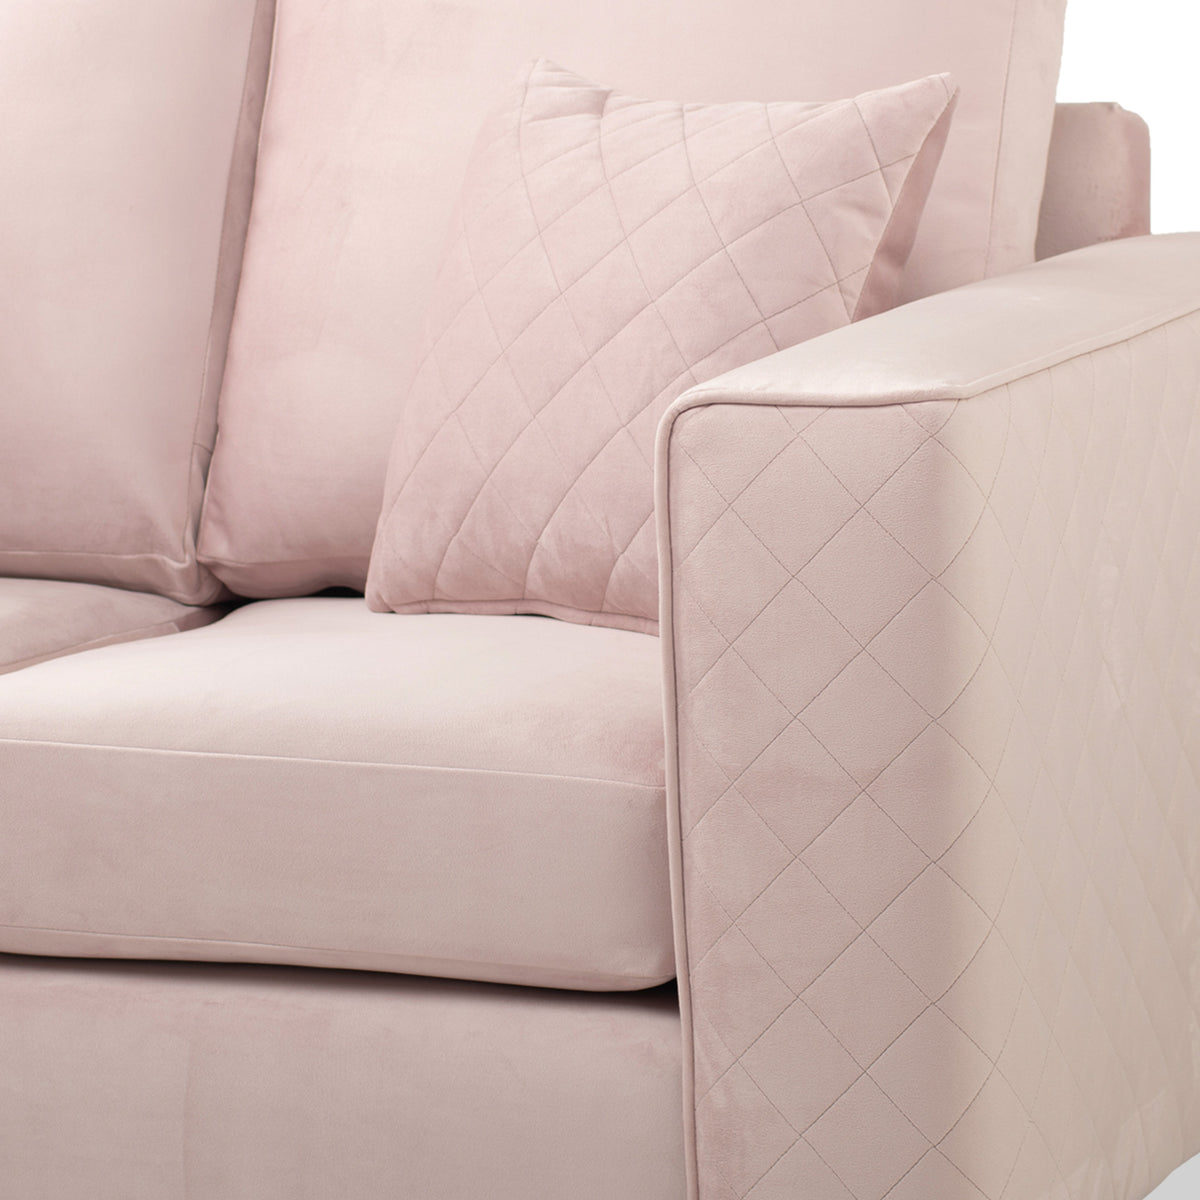 Swift 2 Seater Sofa Blush Roseland Furniture